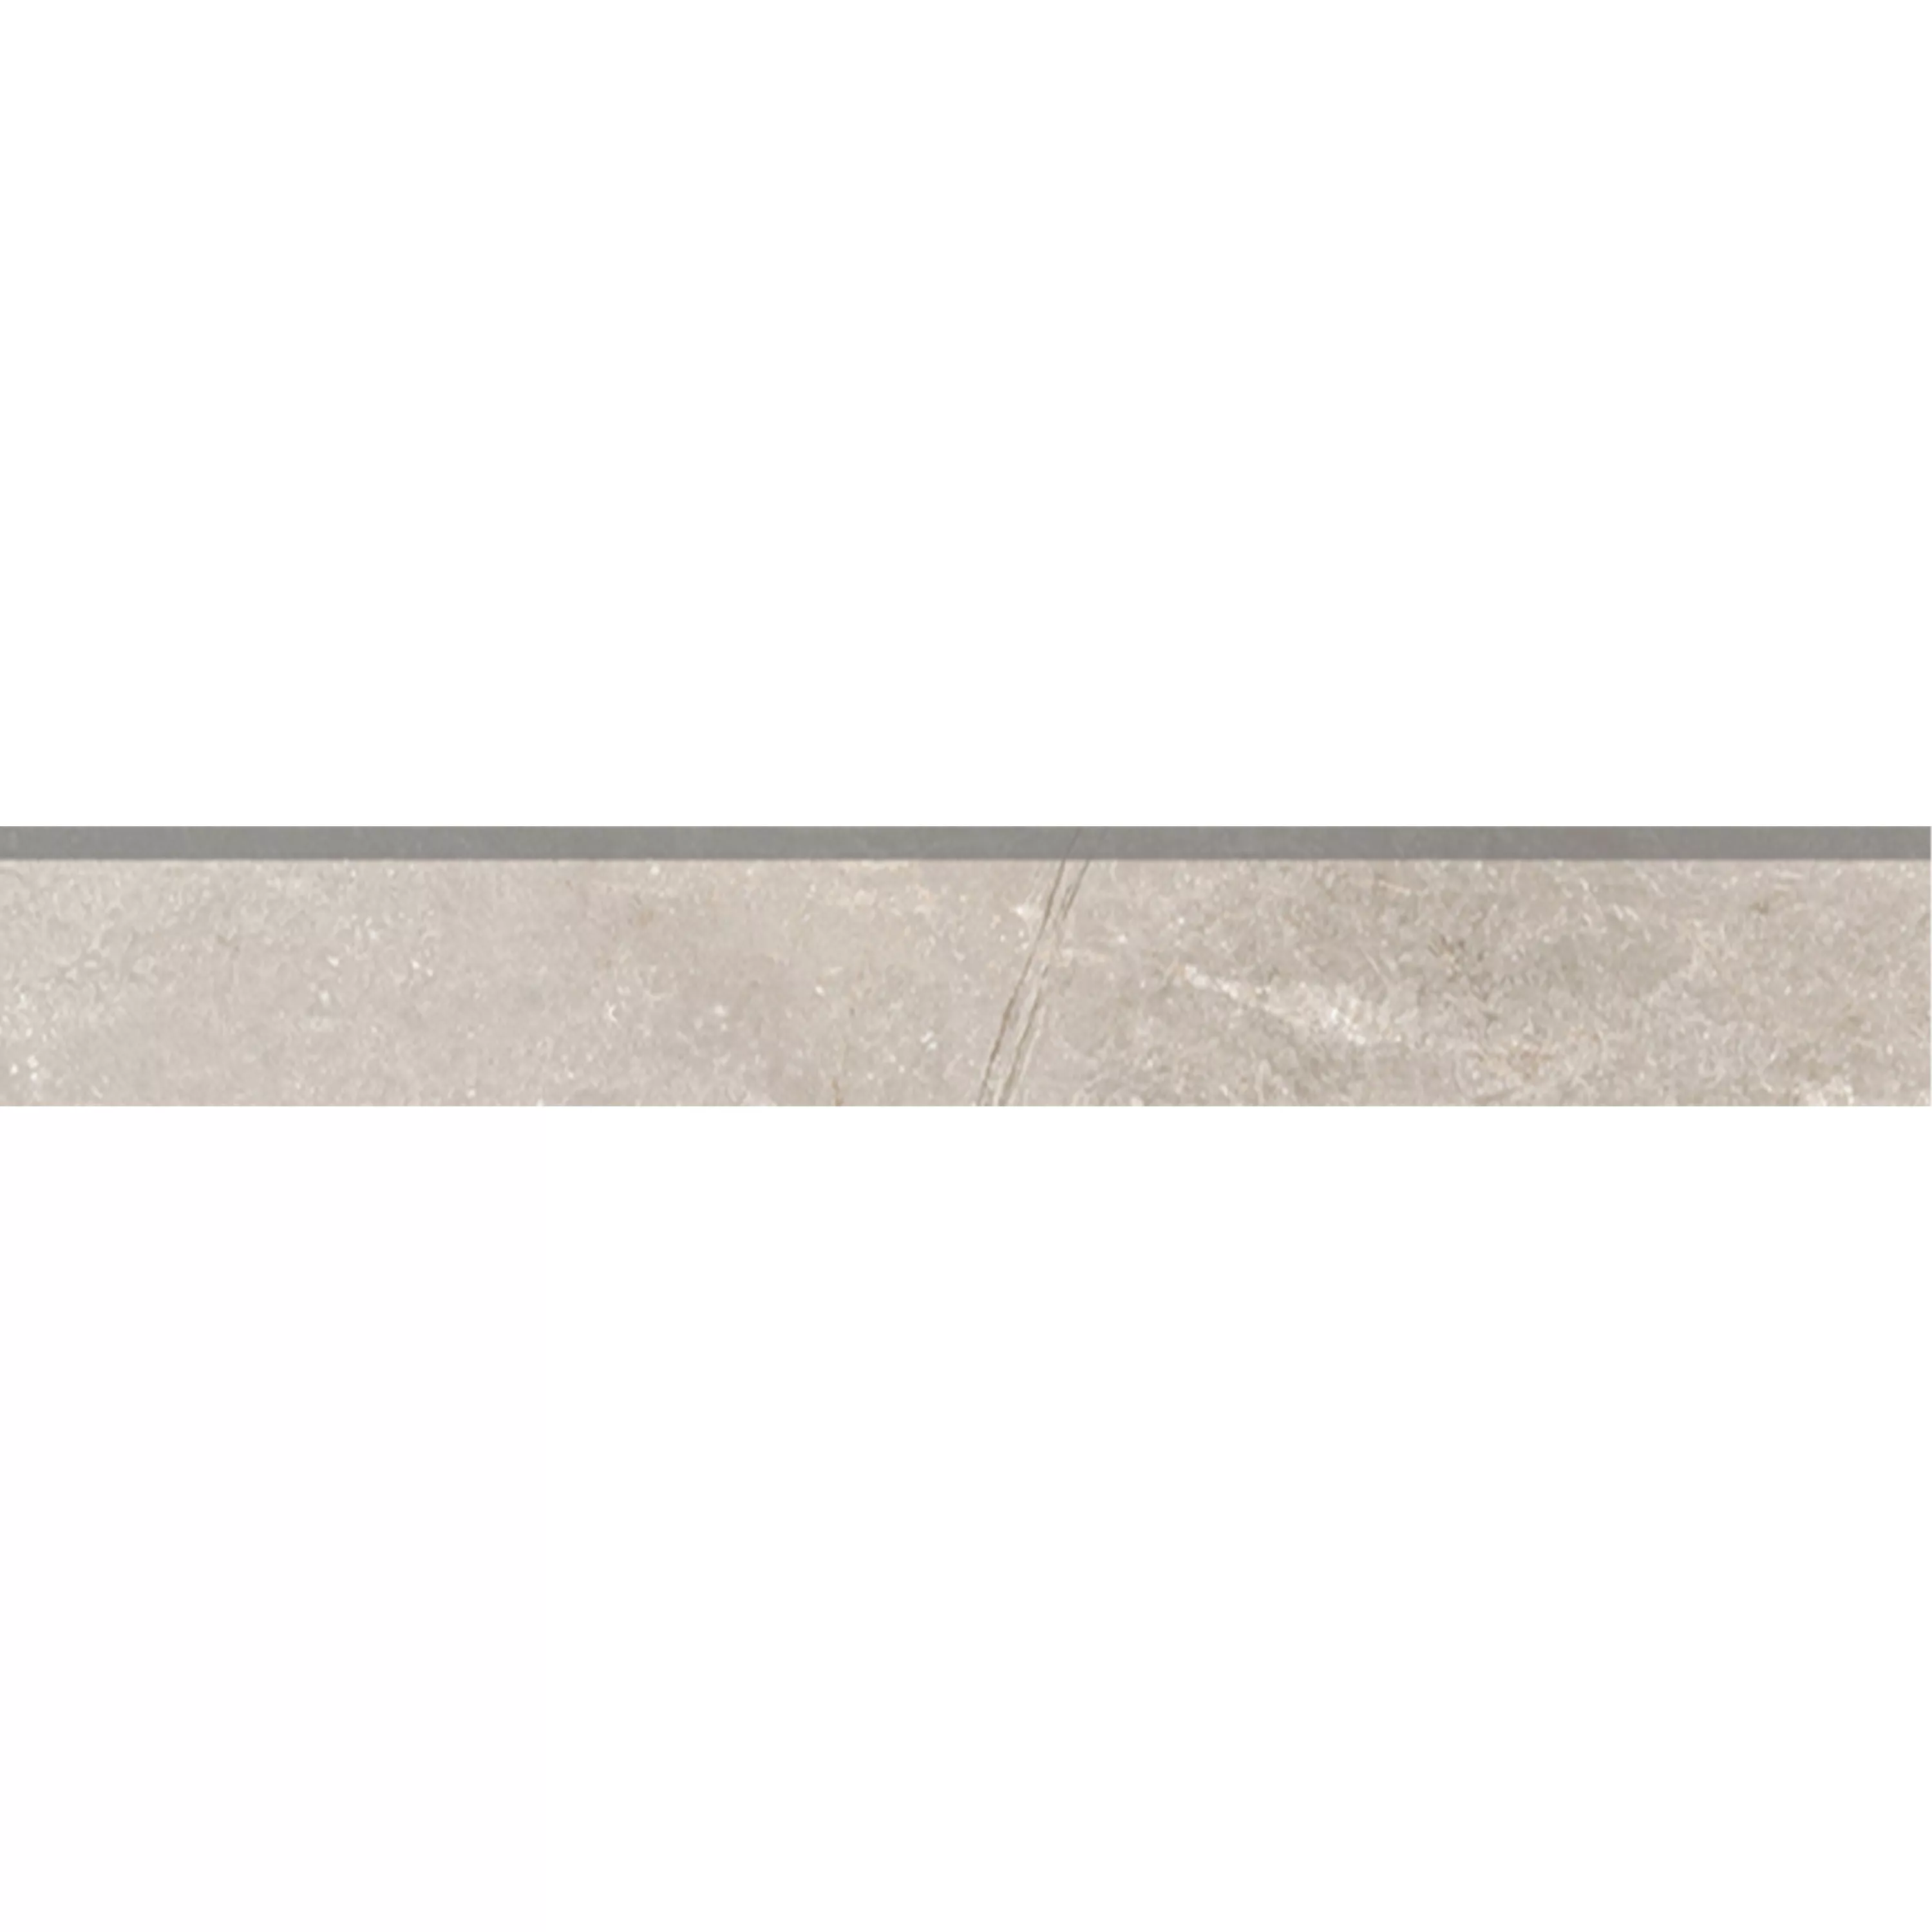 Πλακάκια Δαπέδου Pangea Μαρμάρινη Όψη Παγωμένος Μπεζ Bάση 7x120cm